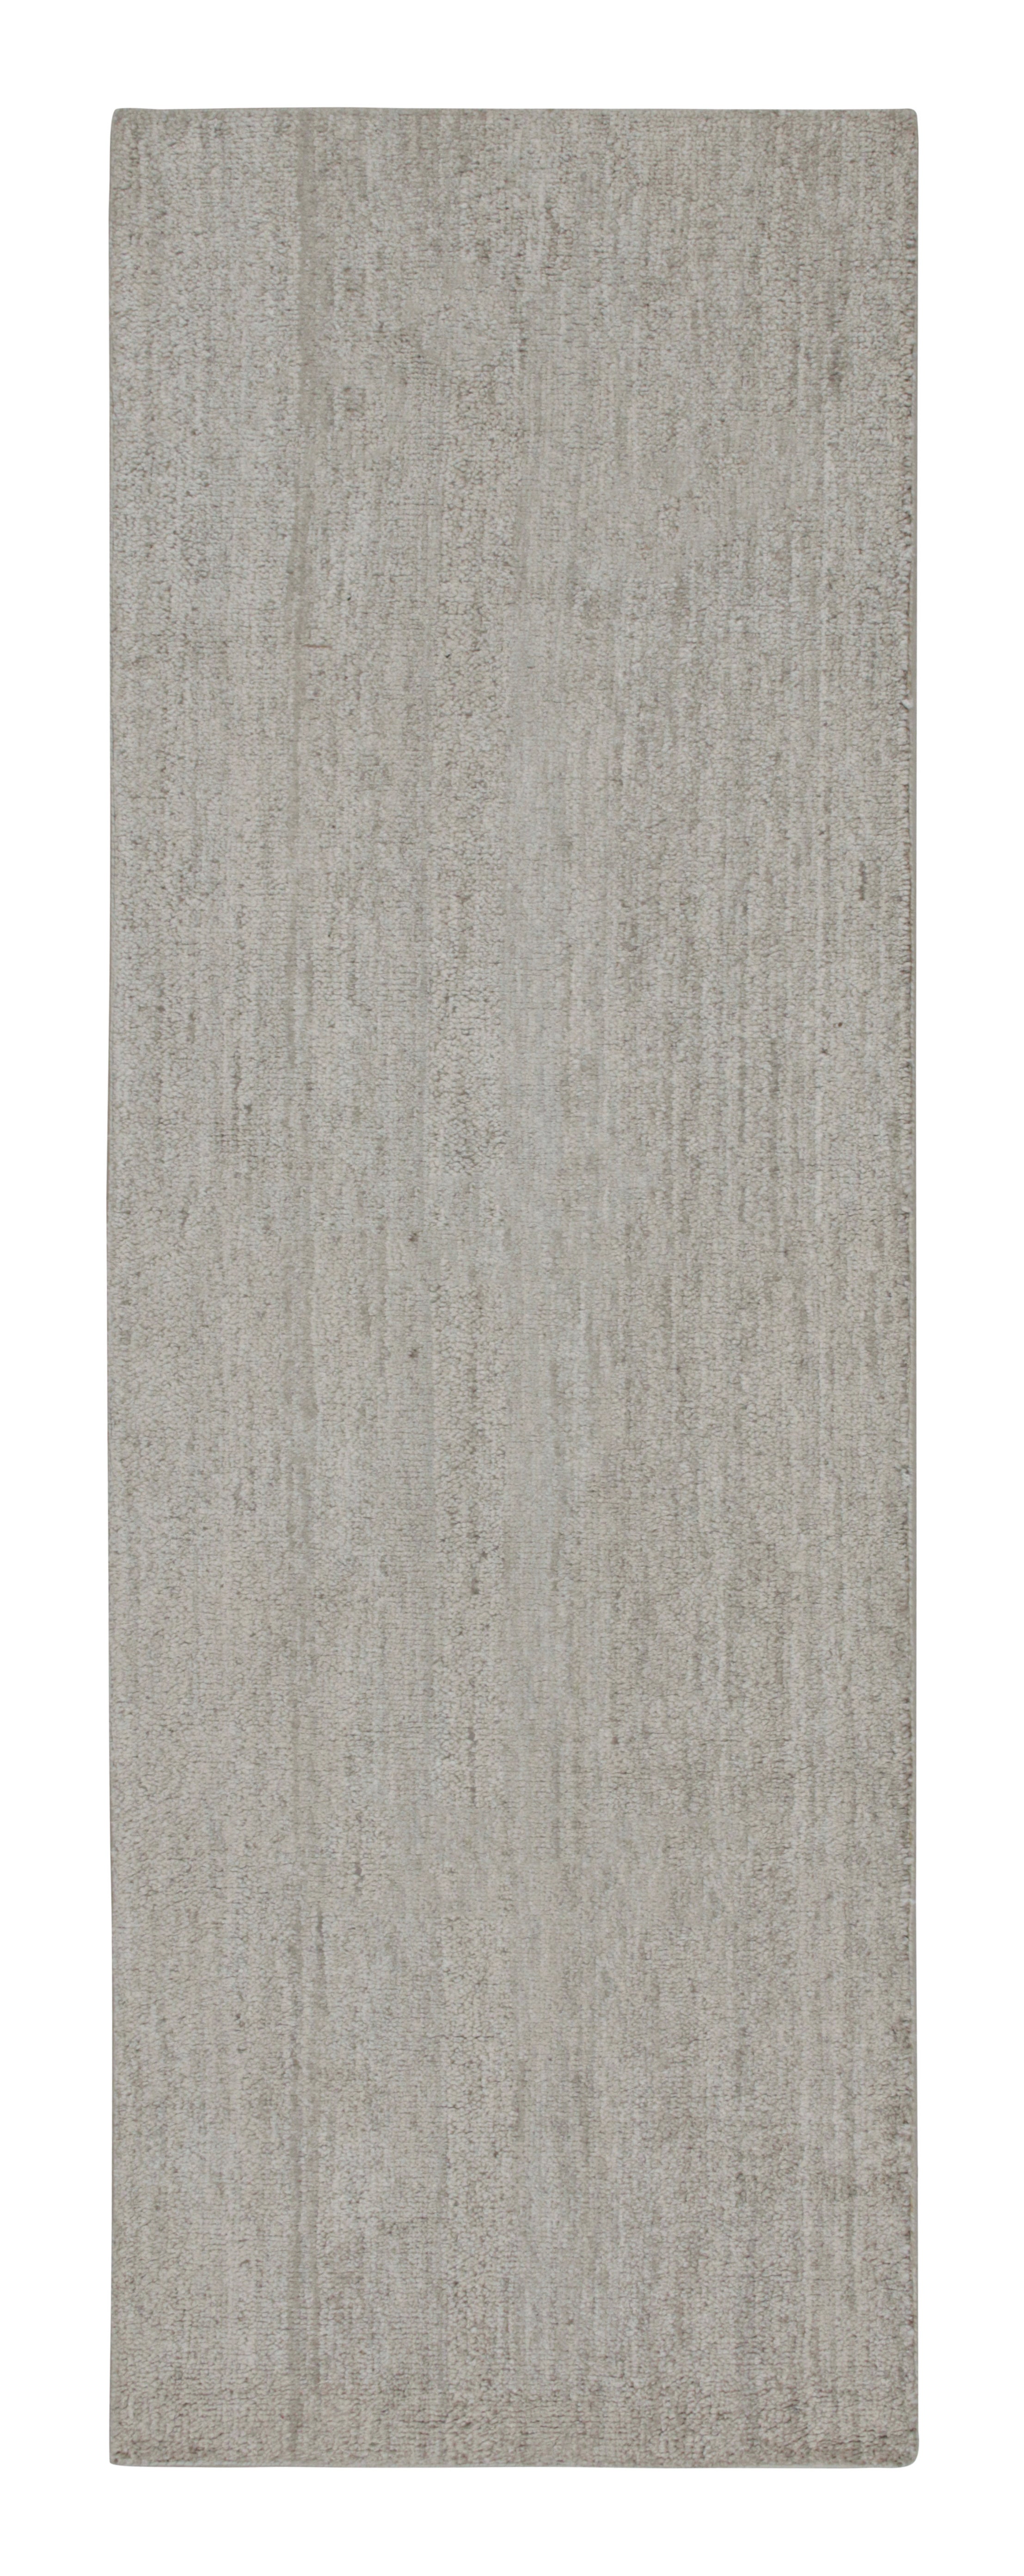 Tapis contemporain et tapis texturé de Rug & Kilim en rayures grises unies